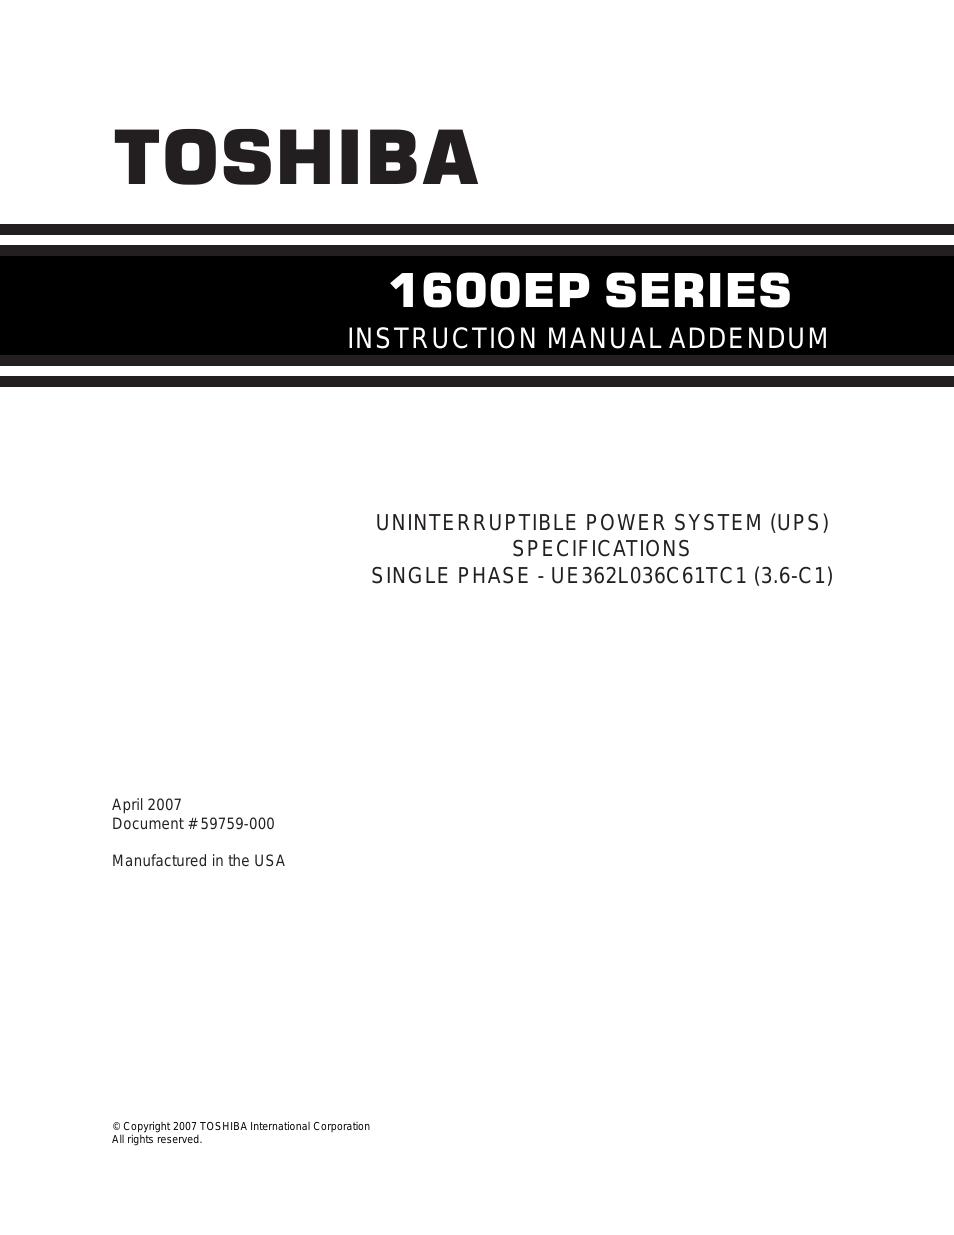 Toshiba 1600EP Series